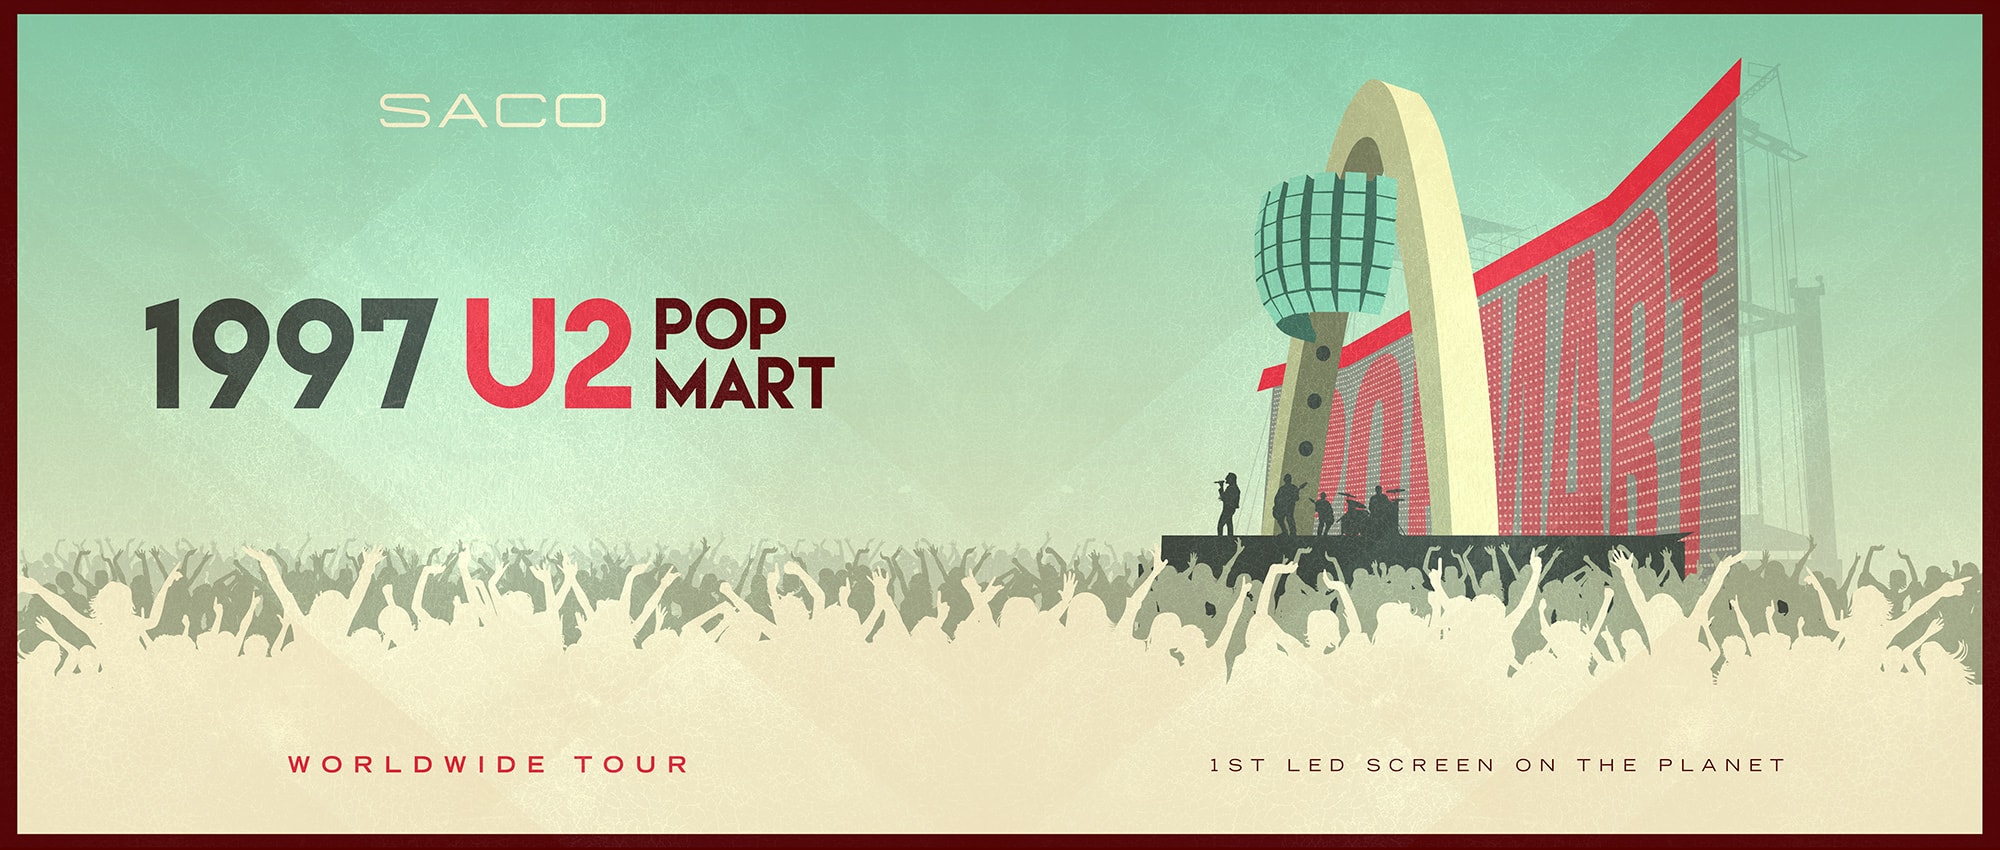 popmart tour dates